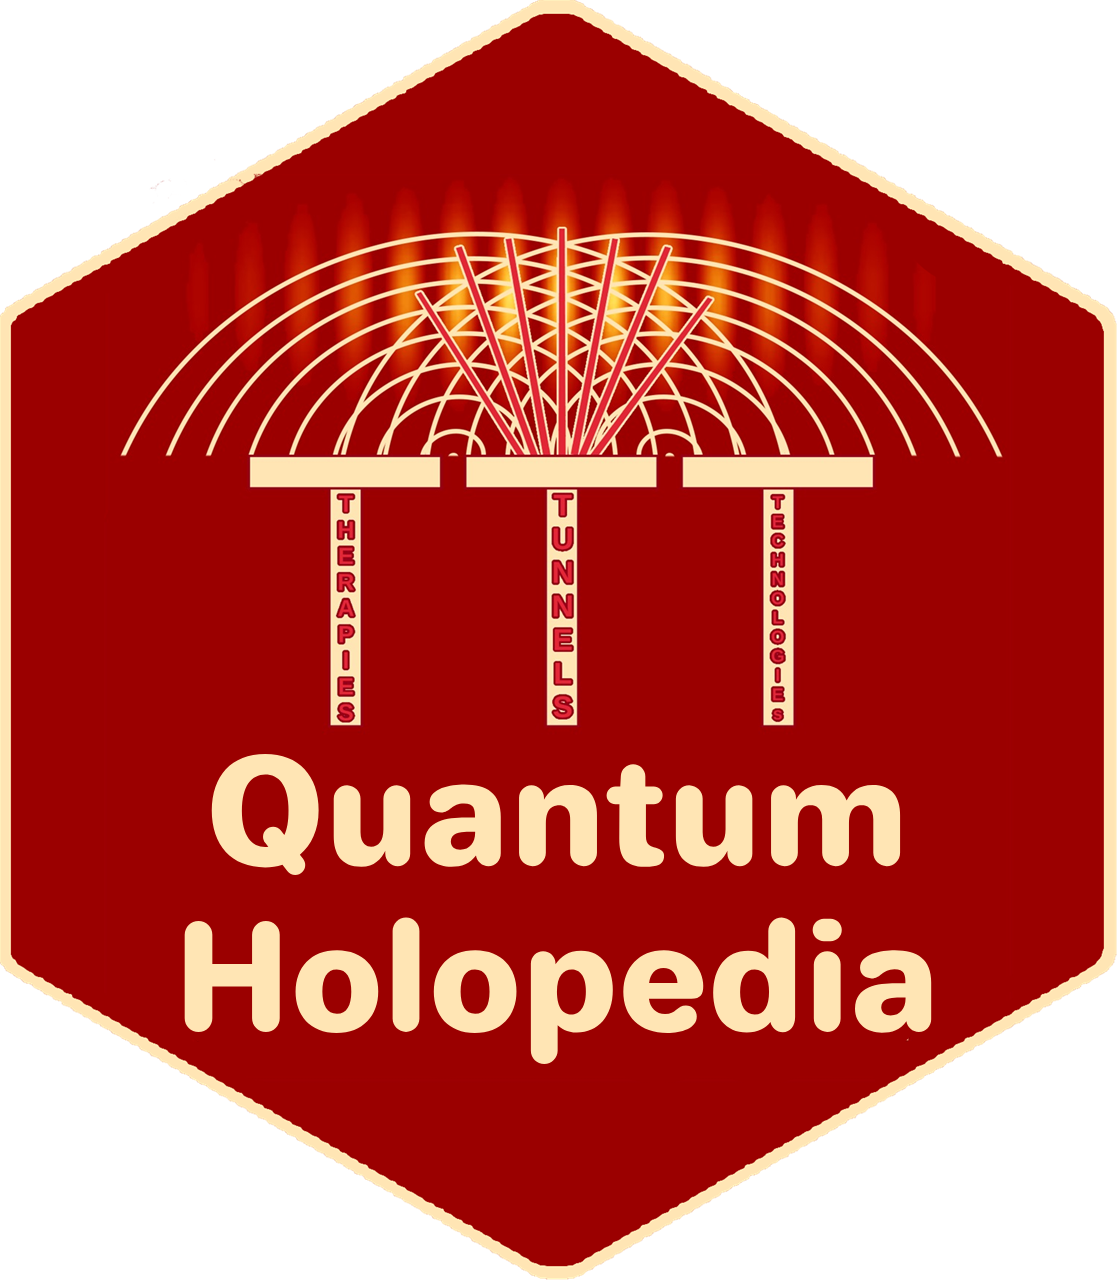 Quantum Holopedia mission